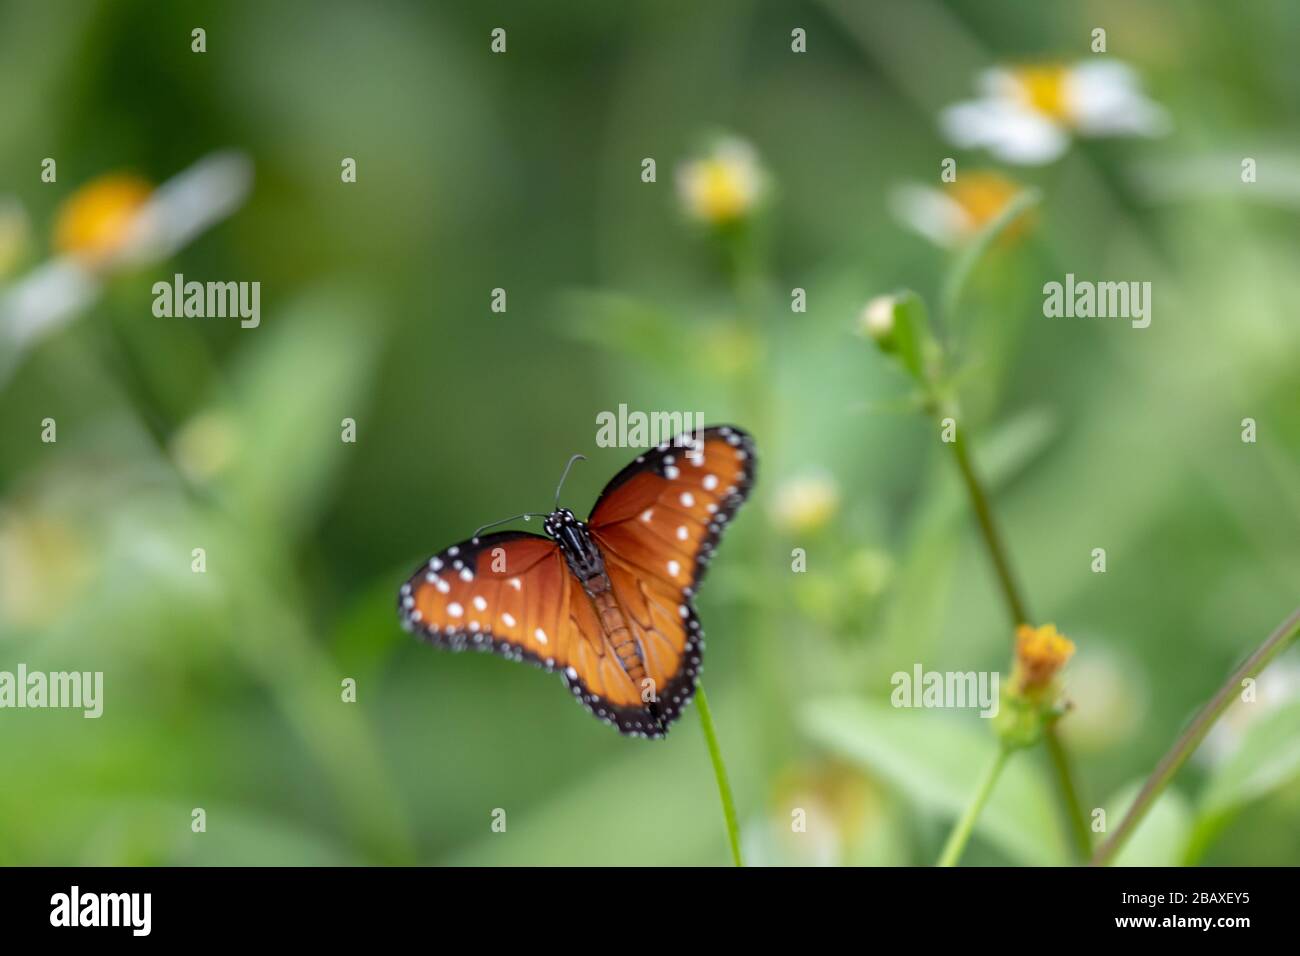 La farfalla regina (Danaus gilippus) è uno di molti insetti che derivano le difese chimiche contro i suoi predatori dalla sua pianta alimentare. Foto Stock